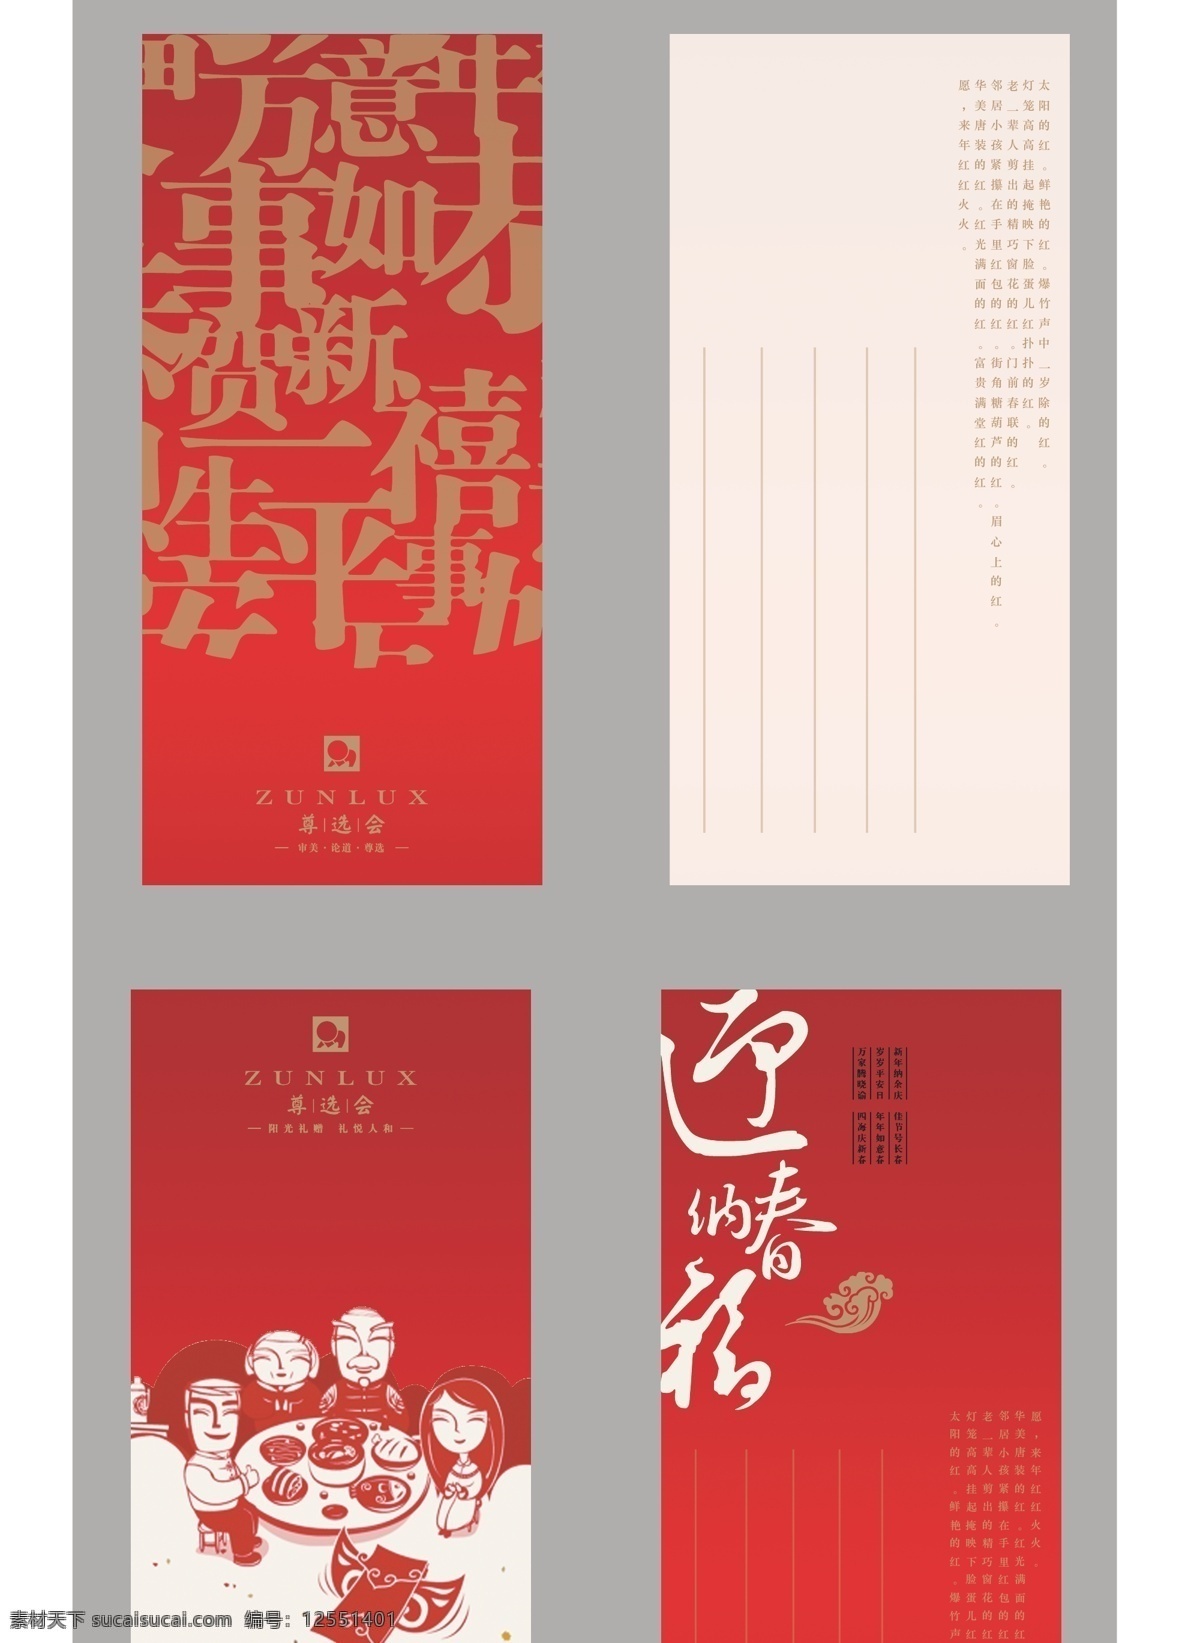 春节卡片设计 春节 中国红 传统节日 迎春 红色 祝福 原创设计 名片卡片